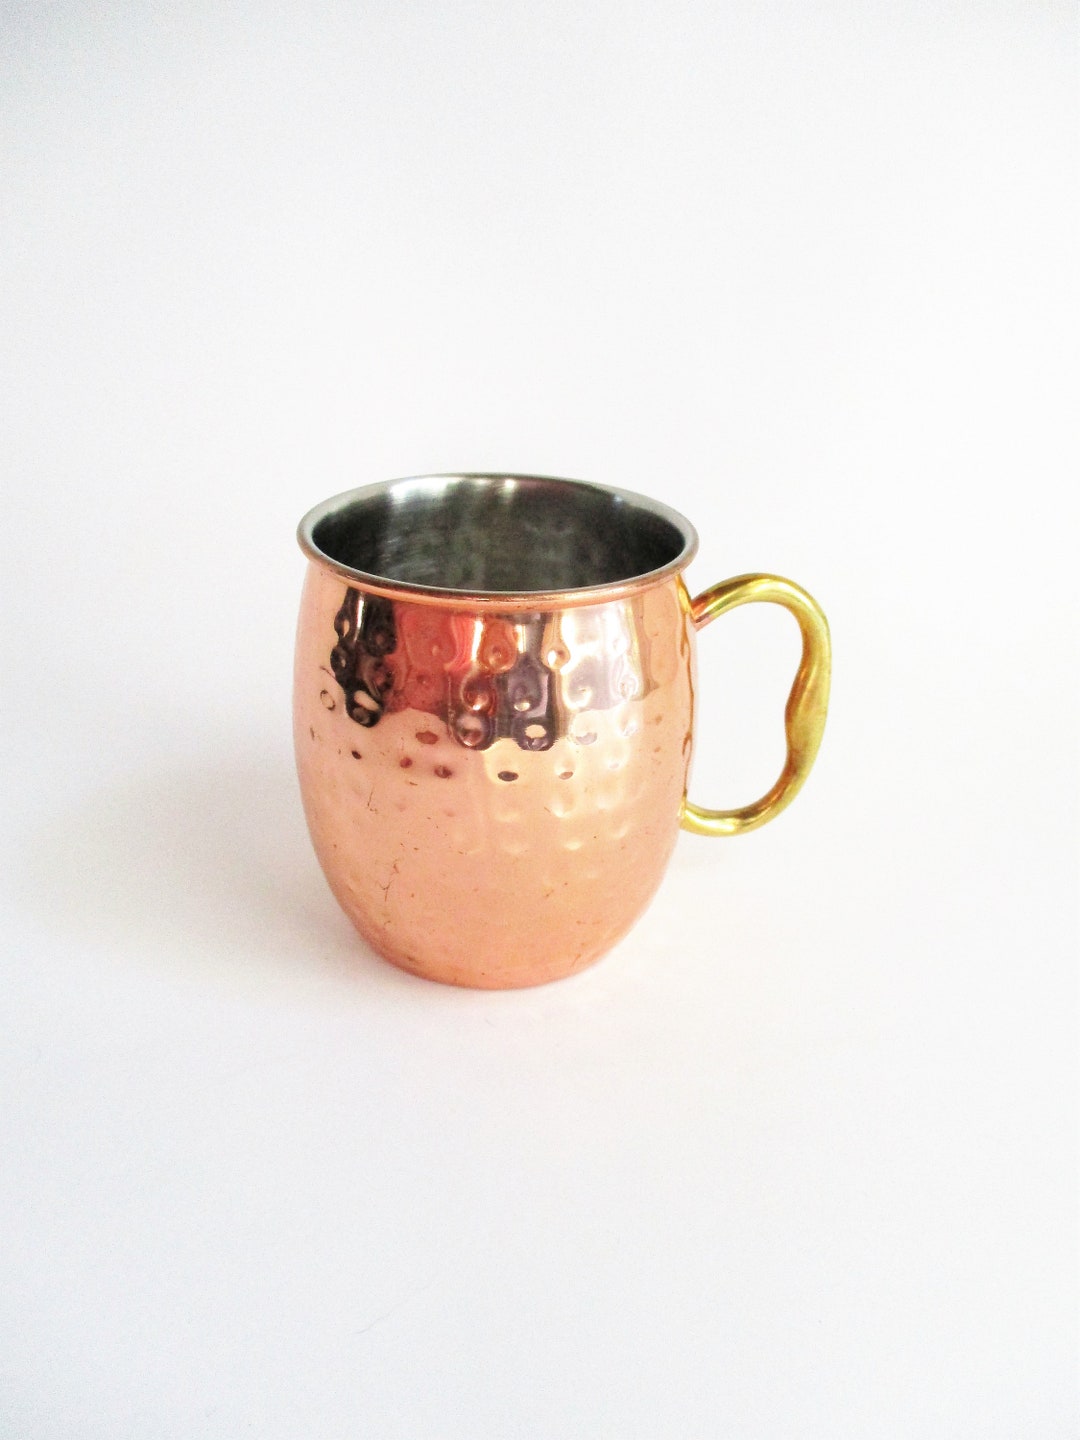 Godinger Double Walled Gold Coffee Mug, Set of 2